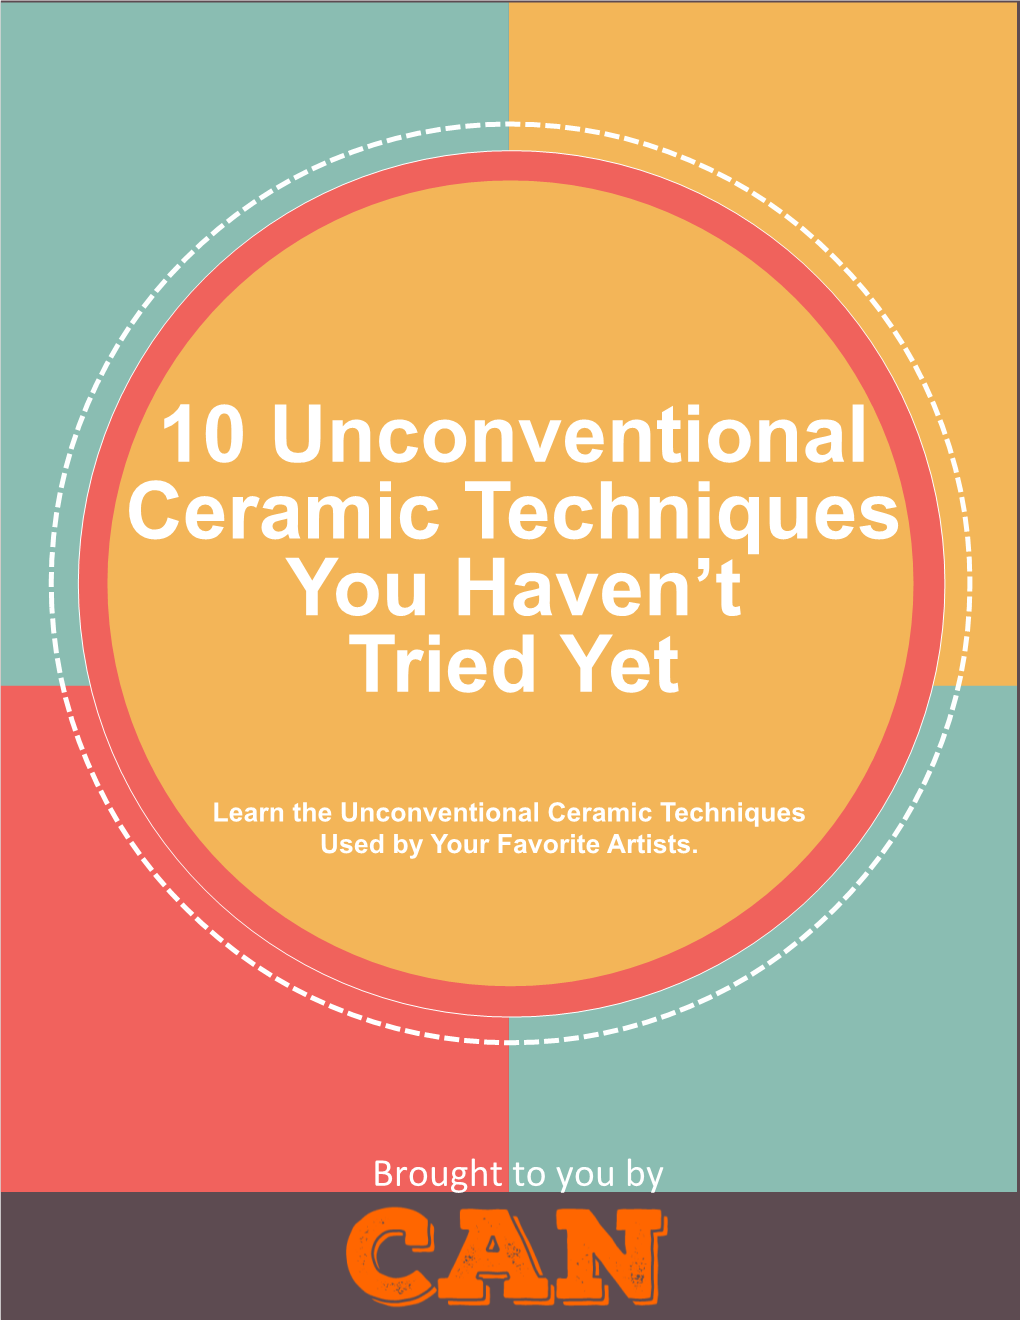 10 Unconventional Ceramic Techniques You Haven't Tried